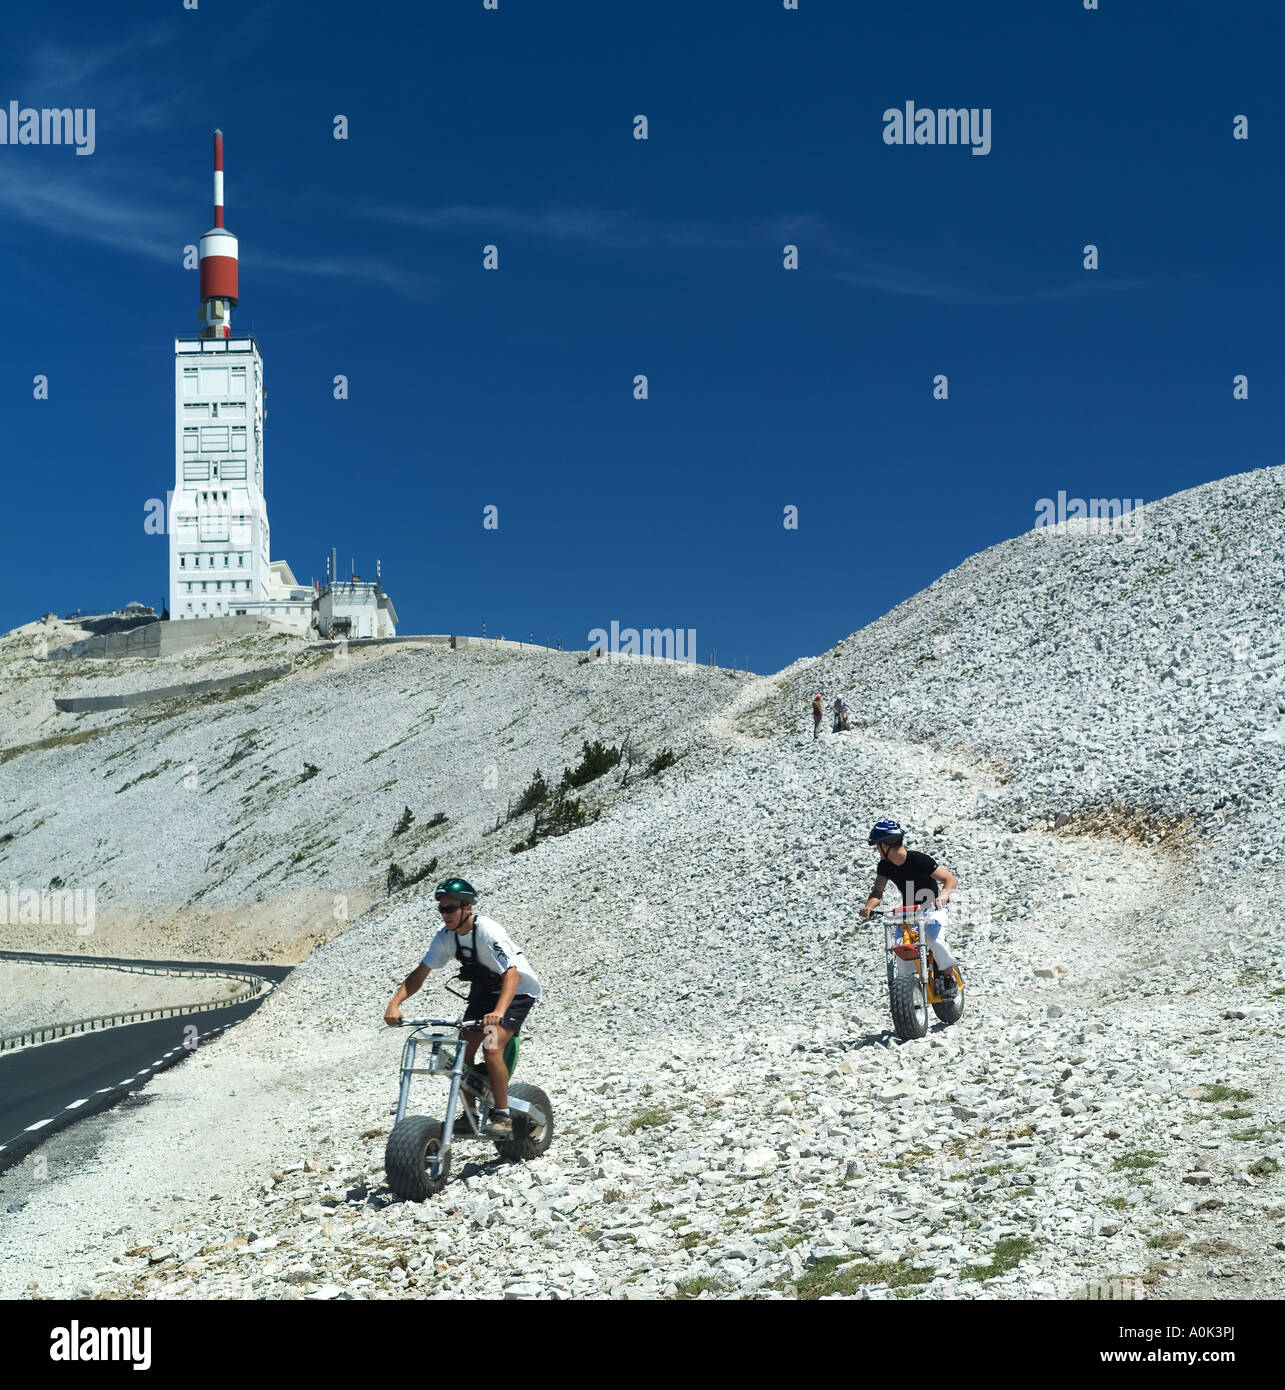 I ciclisti di montagna fatbiking, biciclette con pneumatici di grandi dimensioni, la sommità del Mont Ventoux mount, televisione torre del relè, Vaucluse Provence, Francia Foto Stock